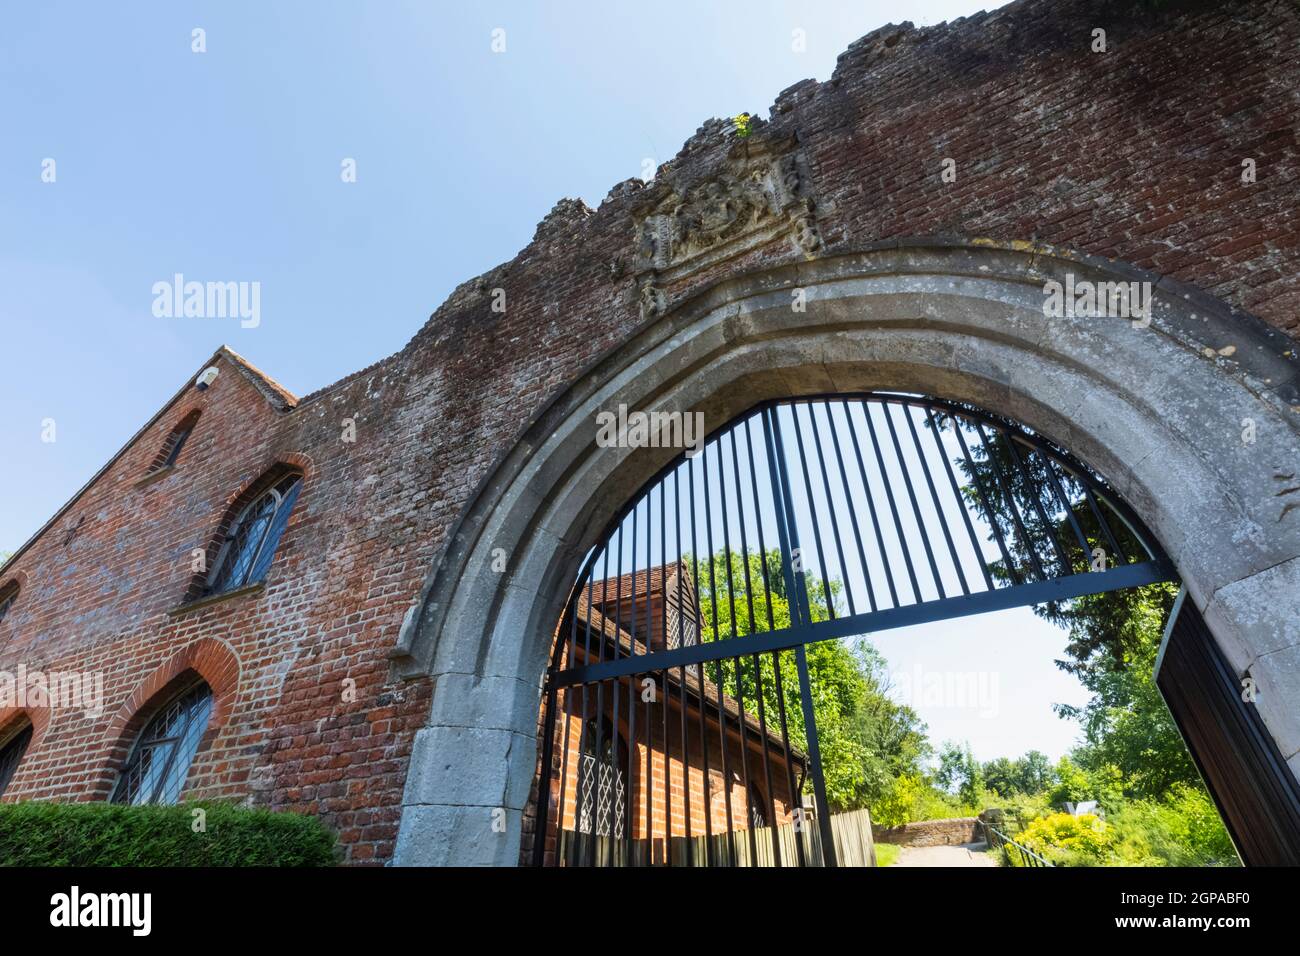 England, Hampshire, Basingstoke, Old Basing Village, Basing House, The Garrison Gate Stock Photo